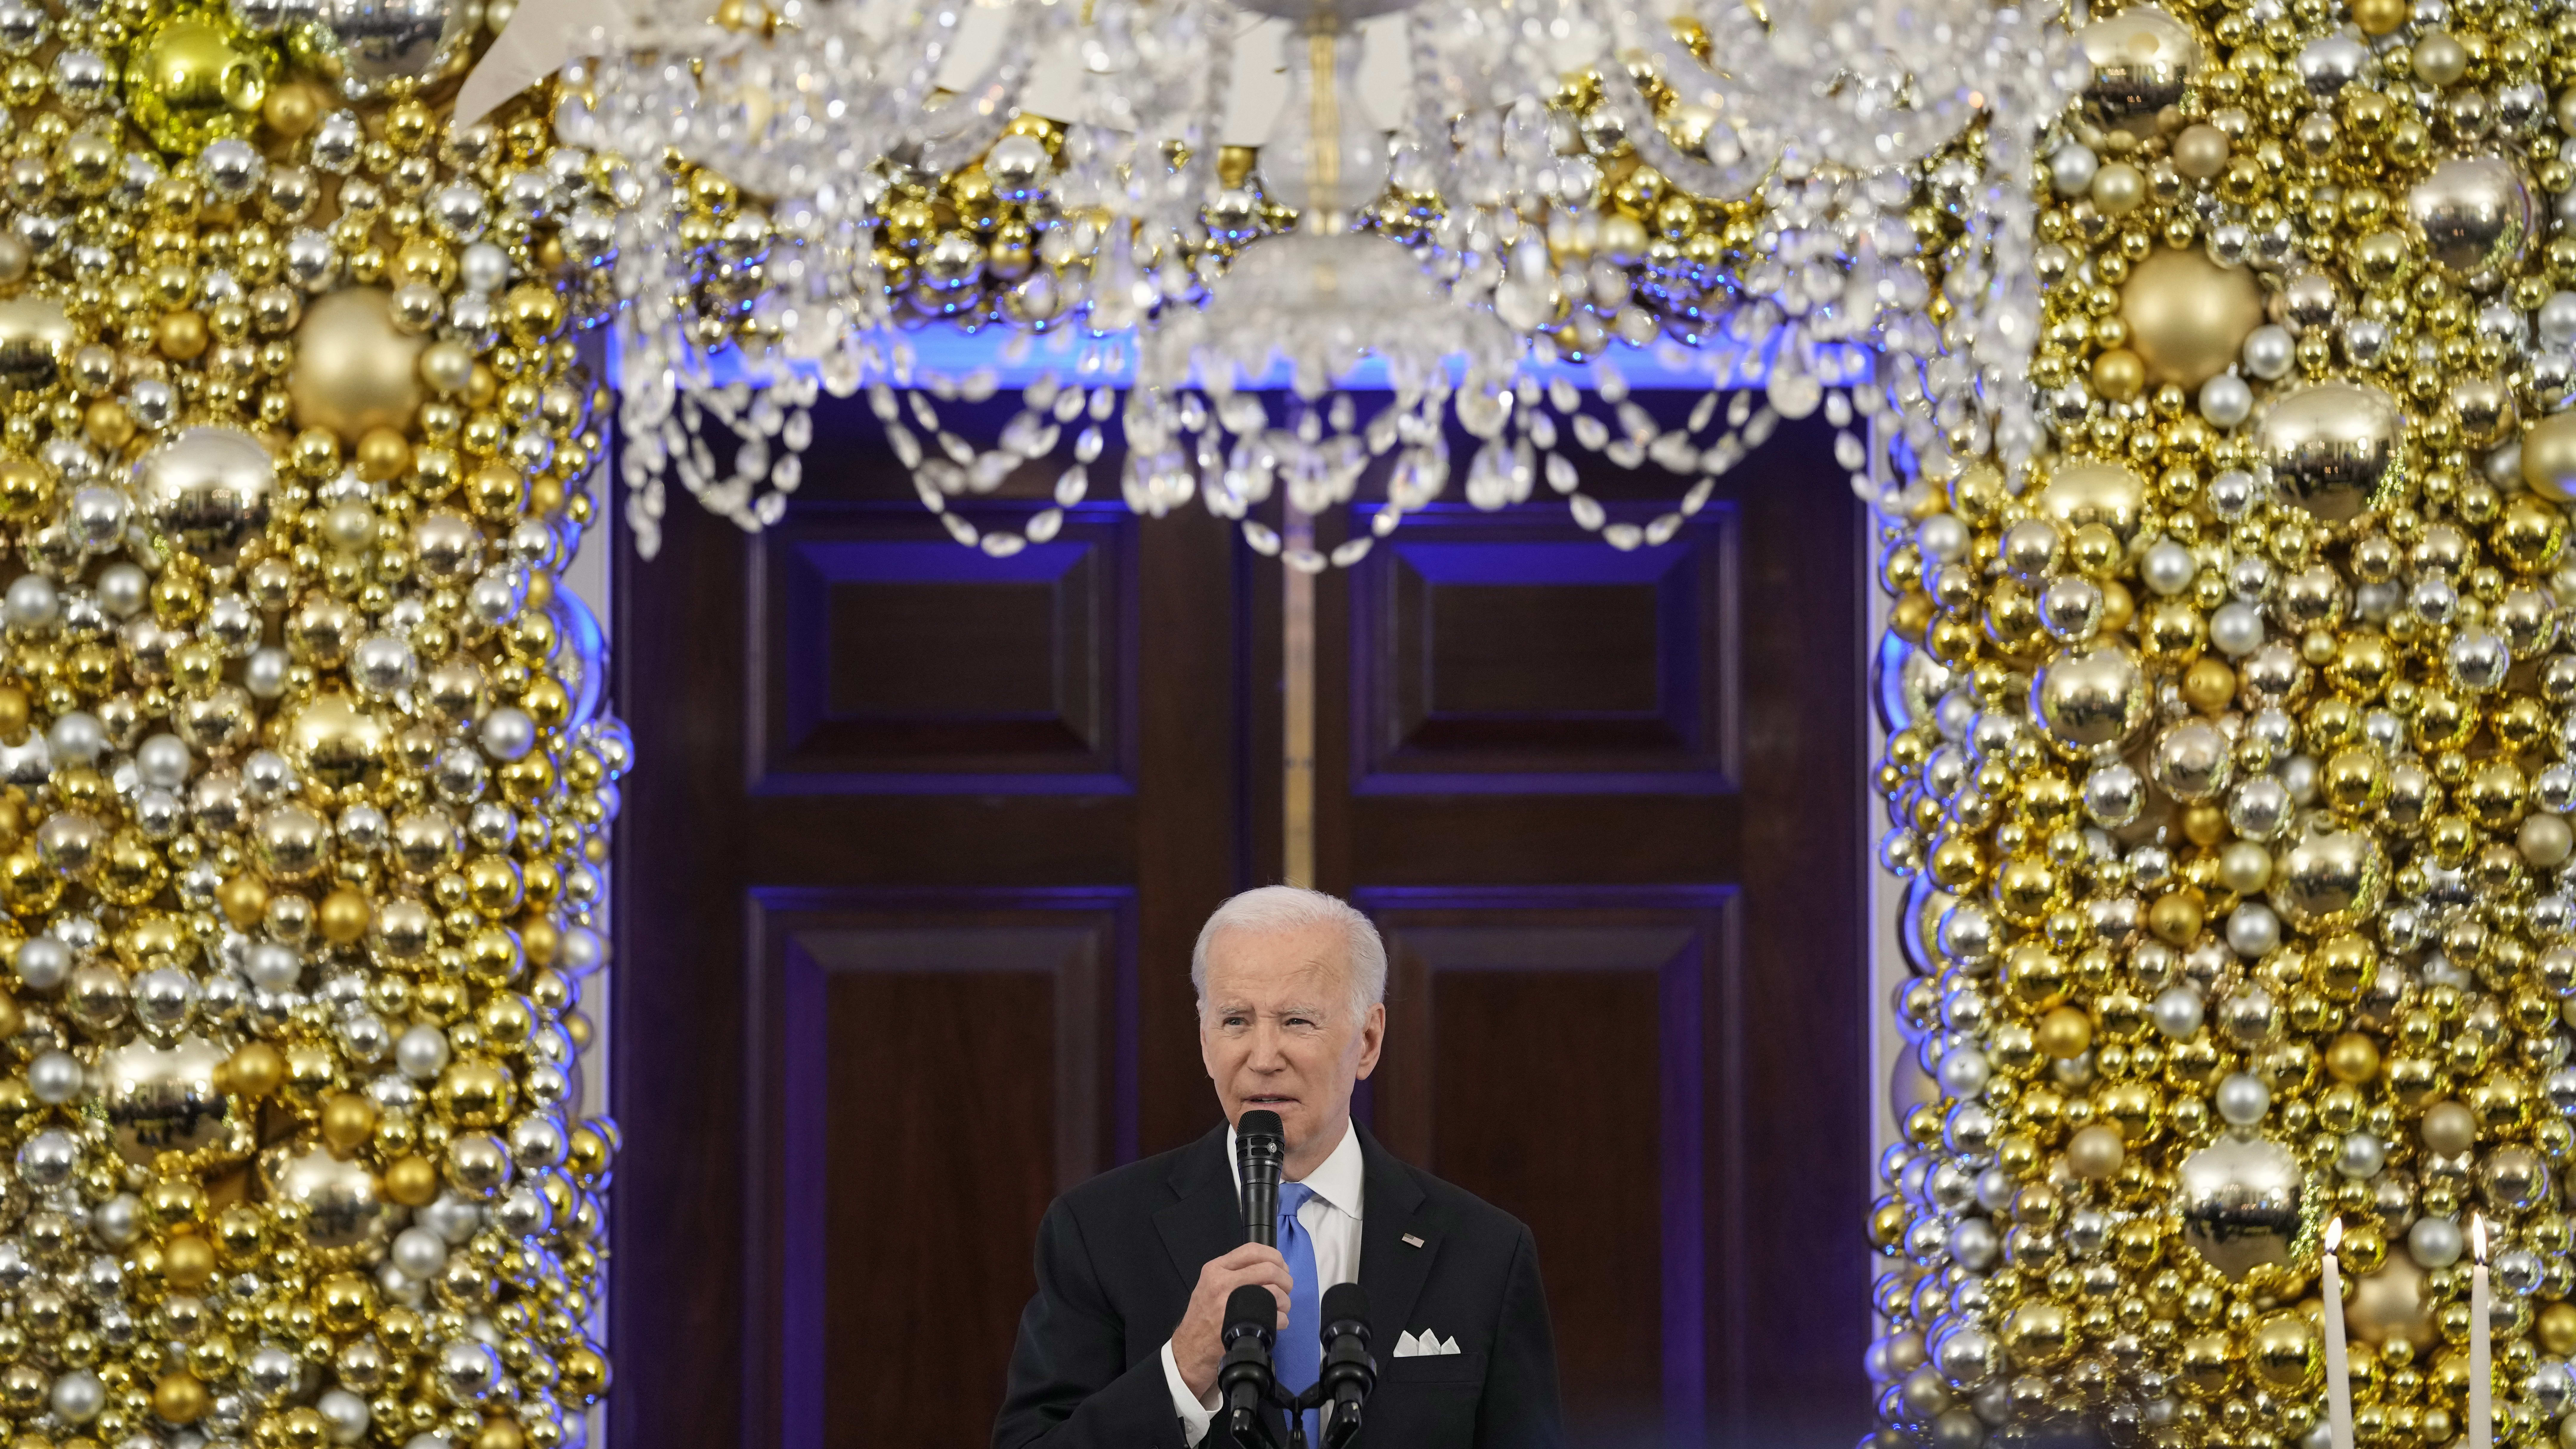 President Biden speaks at the White House Hanukkah reception.